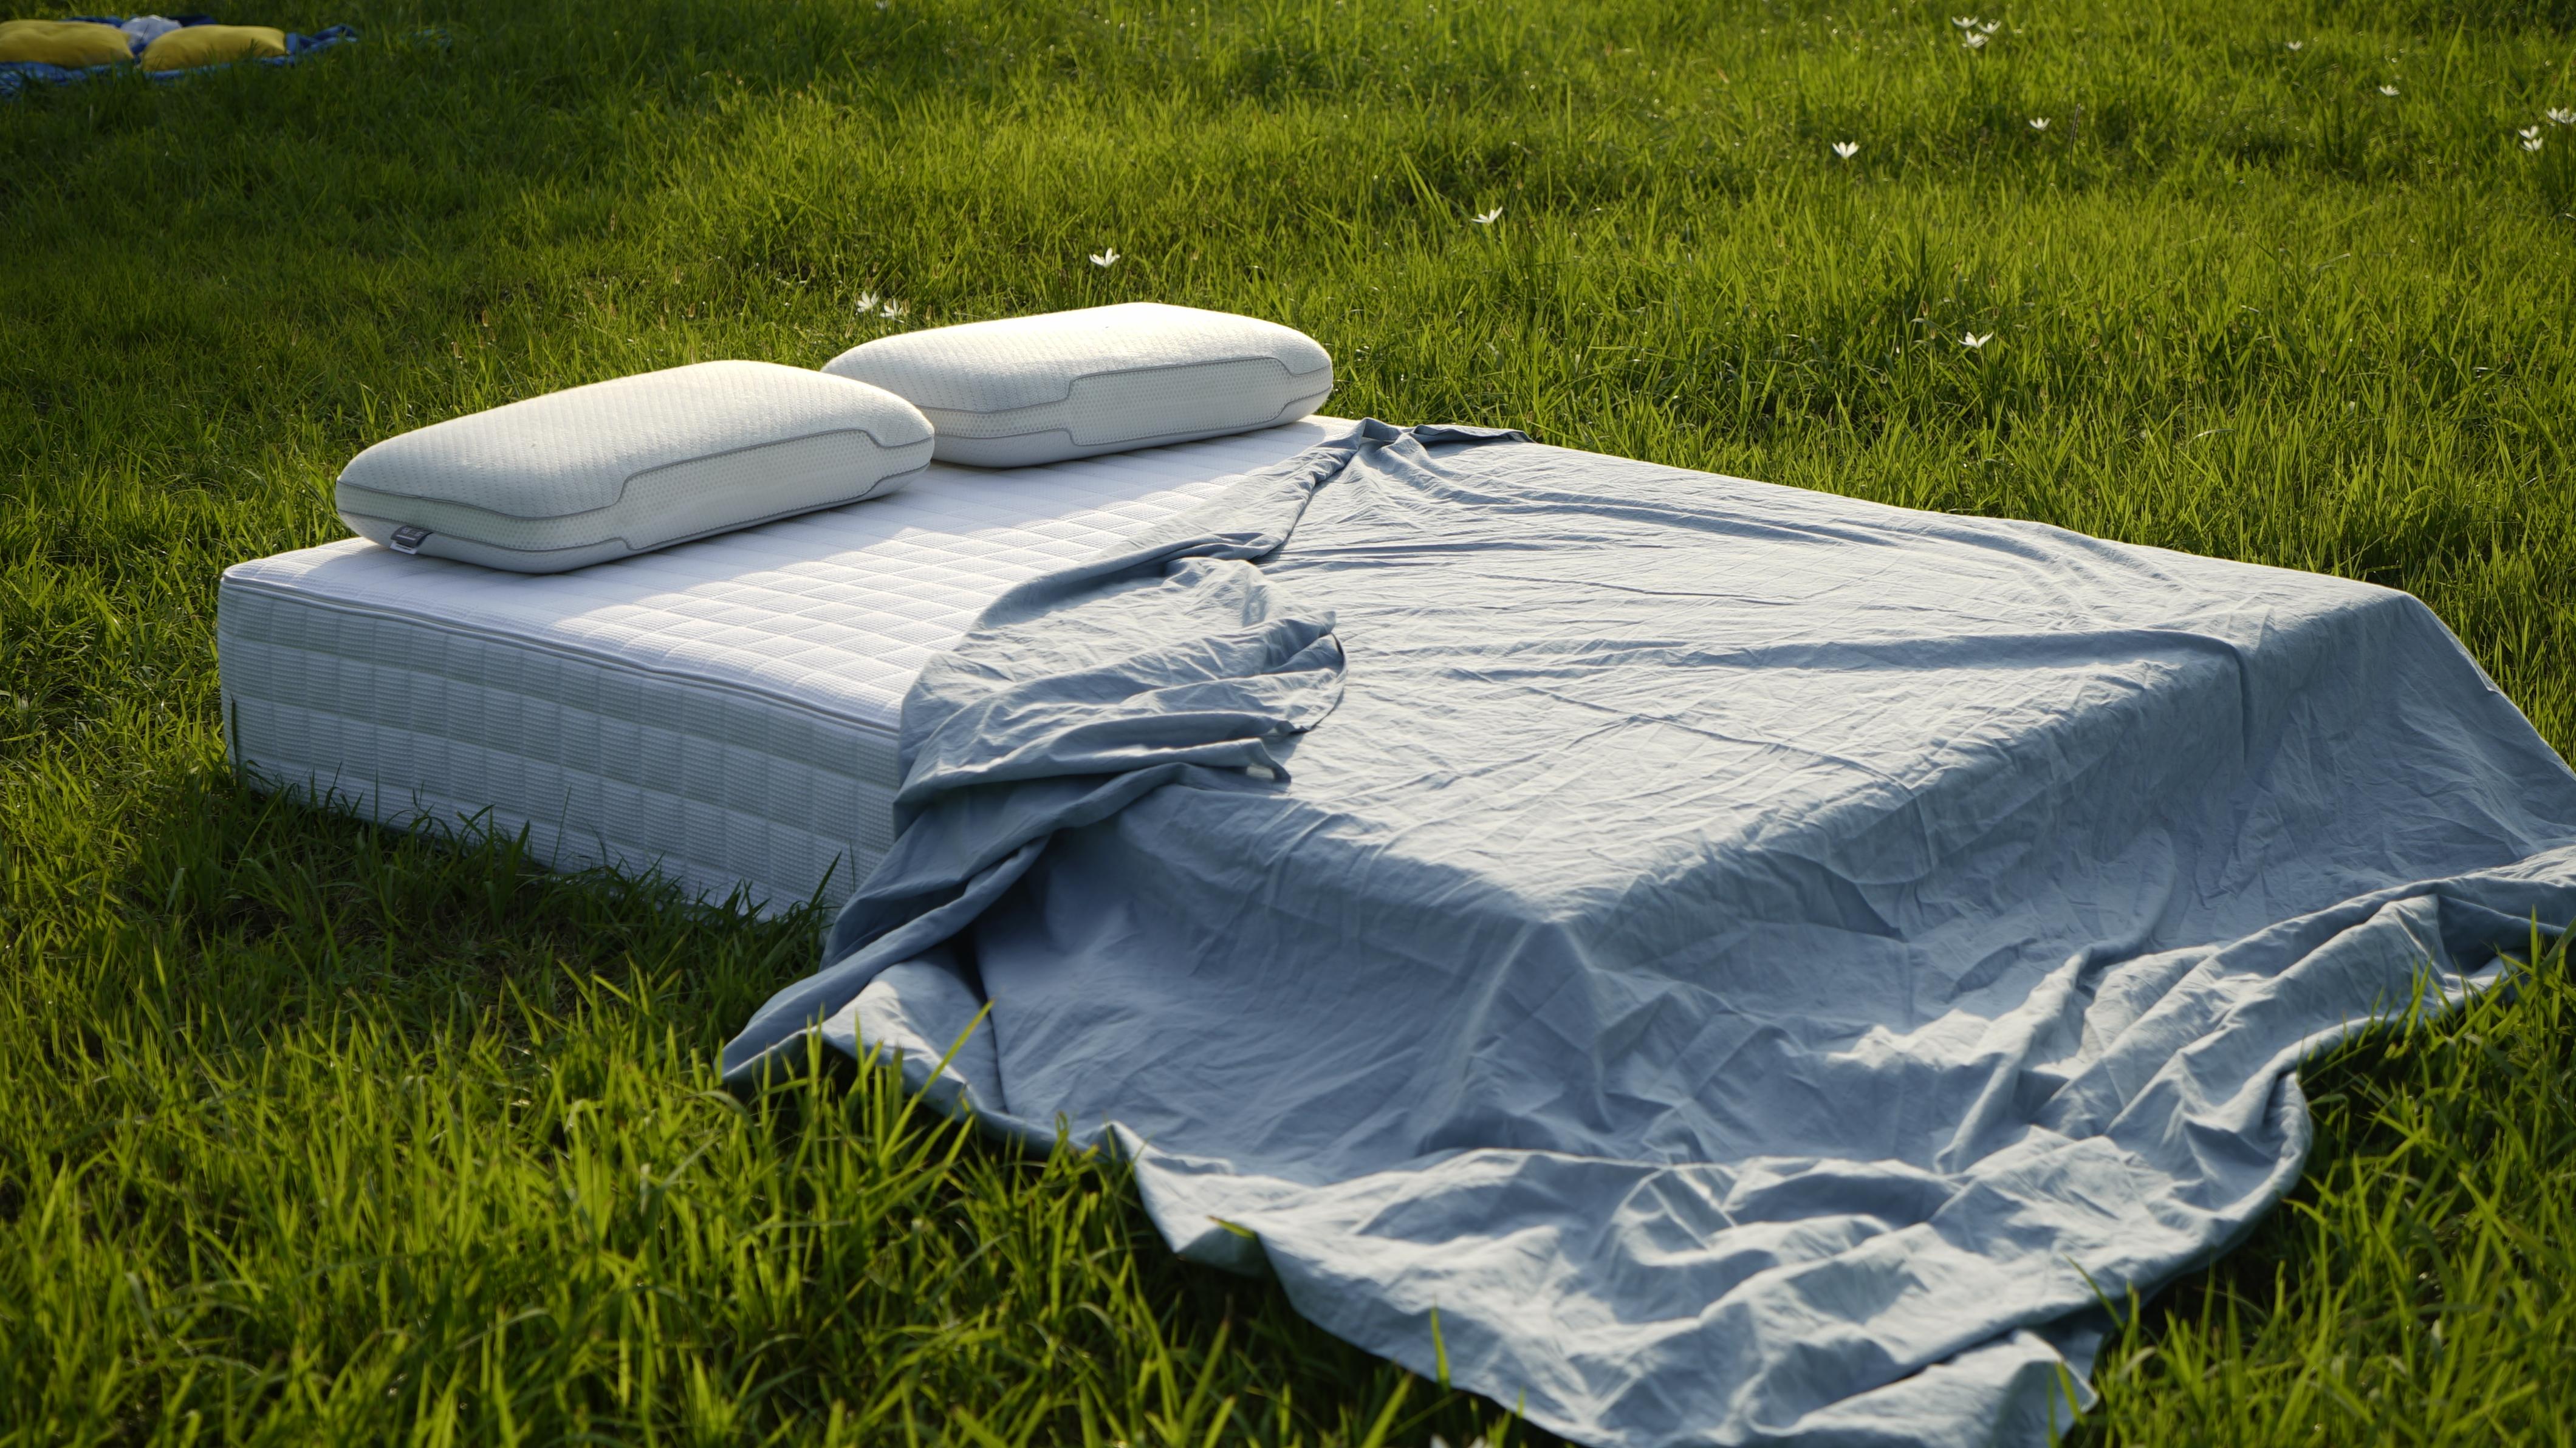 透明化带动睡眠产业,「栖作」主打可拆卸床垫做睡眠品牌